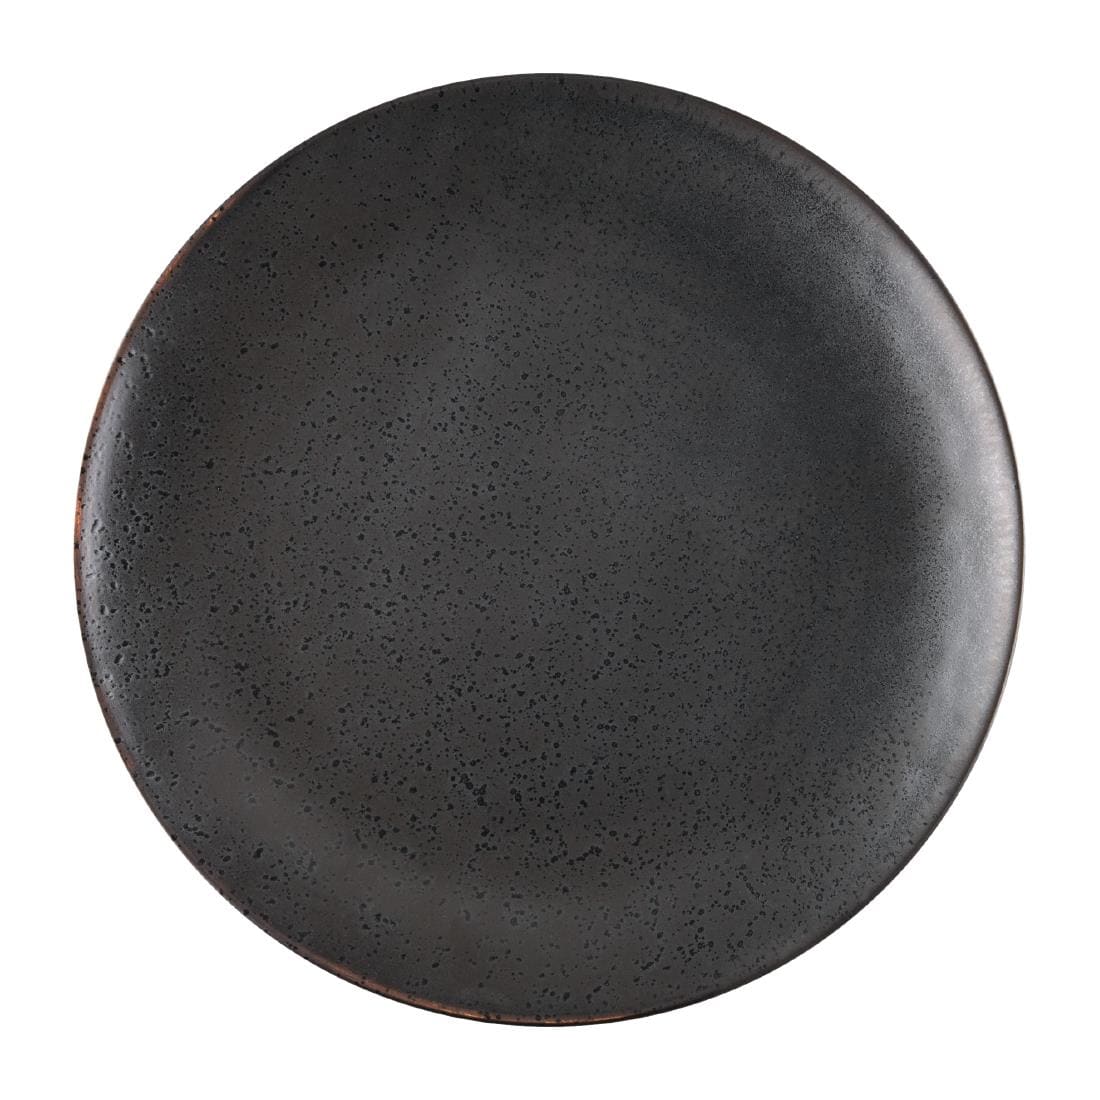 lot de 4 assiettes plates rondes en porcelaine noire 270 mm